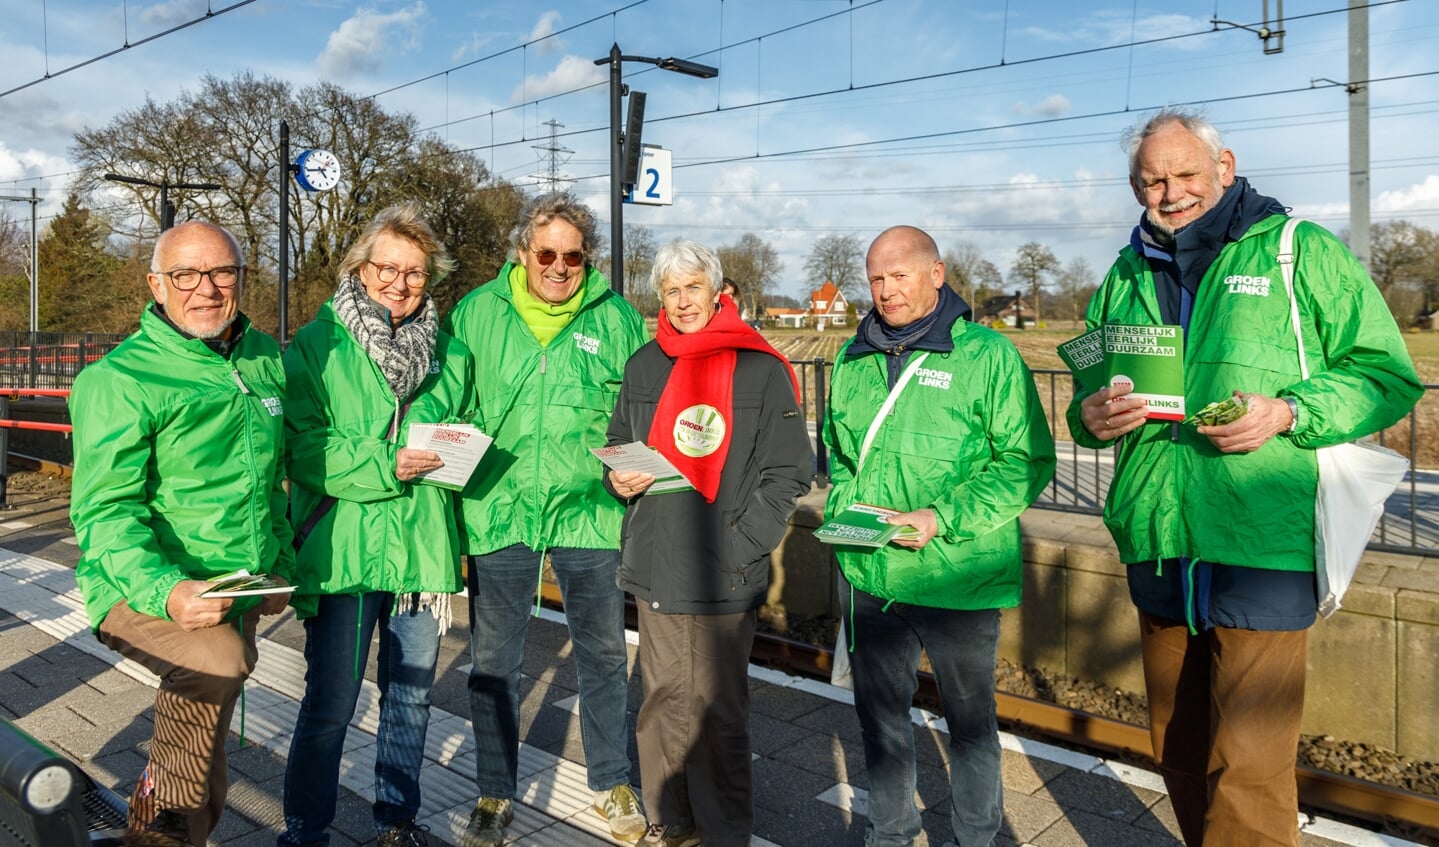 GroenLinks op het NS-station. Vanaf links: René Huigens, Liesbeth Visser, Henk van der Leest, Elzelien van Duijn, Herman Brink en Bouke Oudega (foto Bé van der Veen).